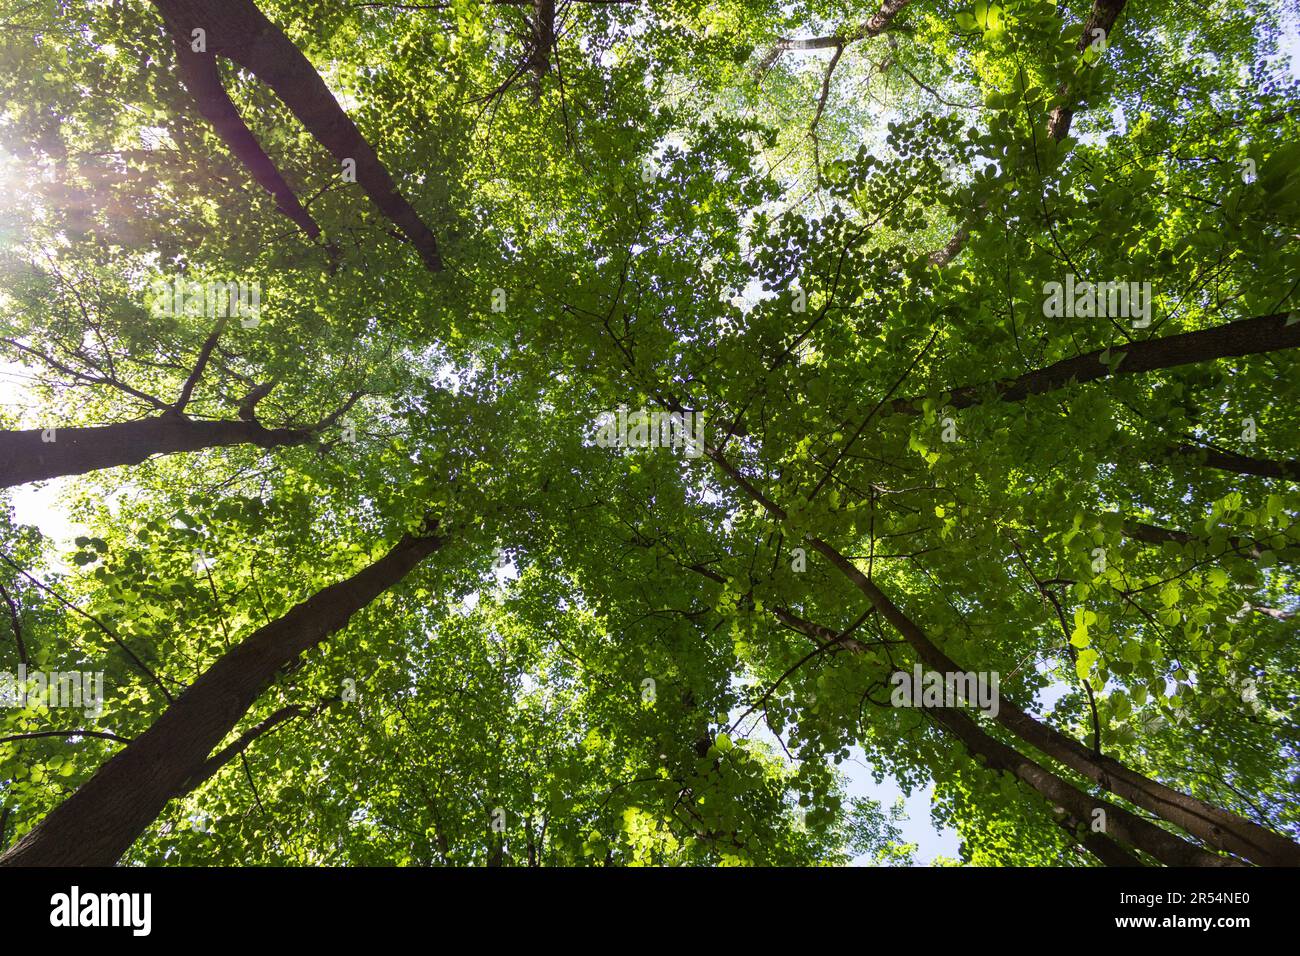 Vista dal basso verso l'alto delle cime degli alberi con fogliame verde giovane, la corona degli alberi della foresta fra cui i raggi del sole si infrangono. Foto Stock